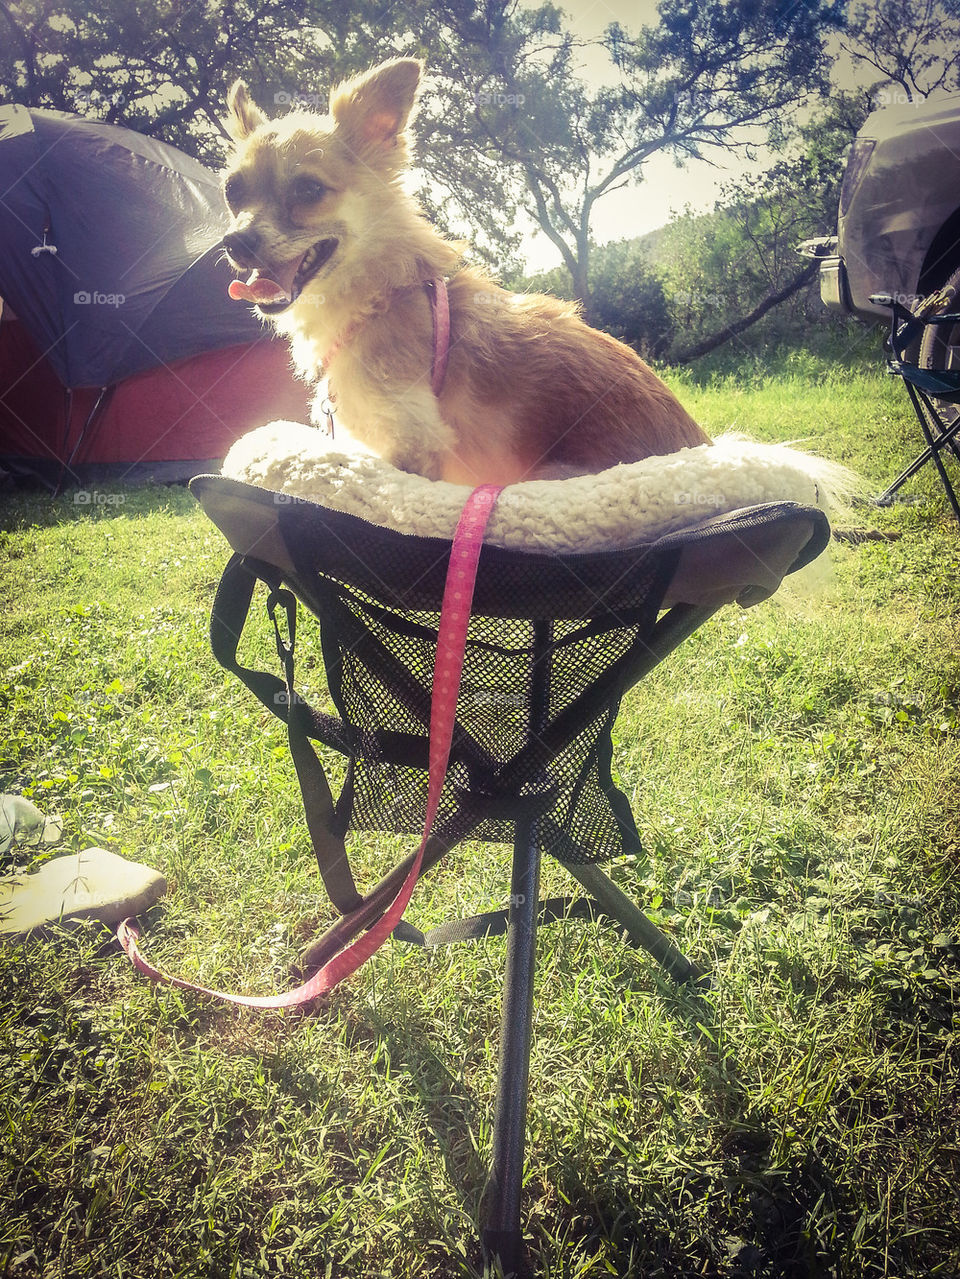 camping dog